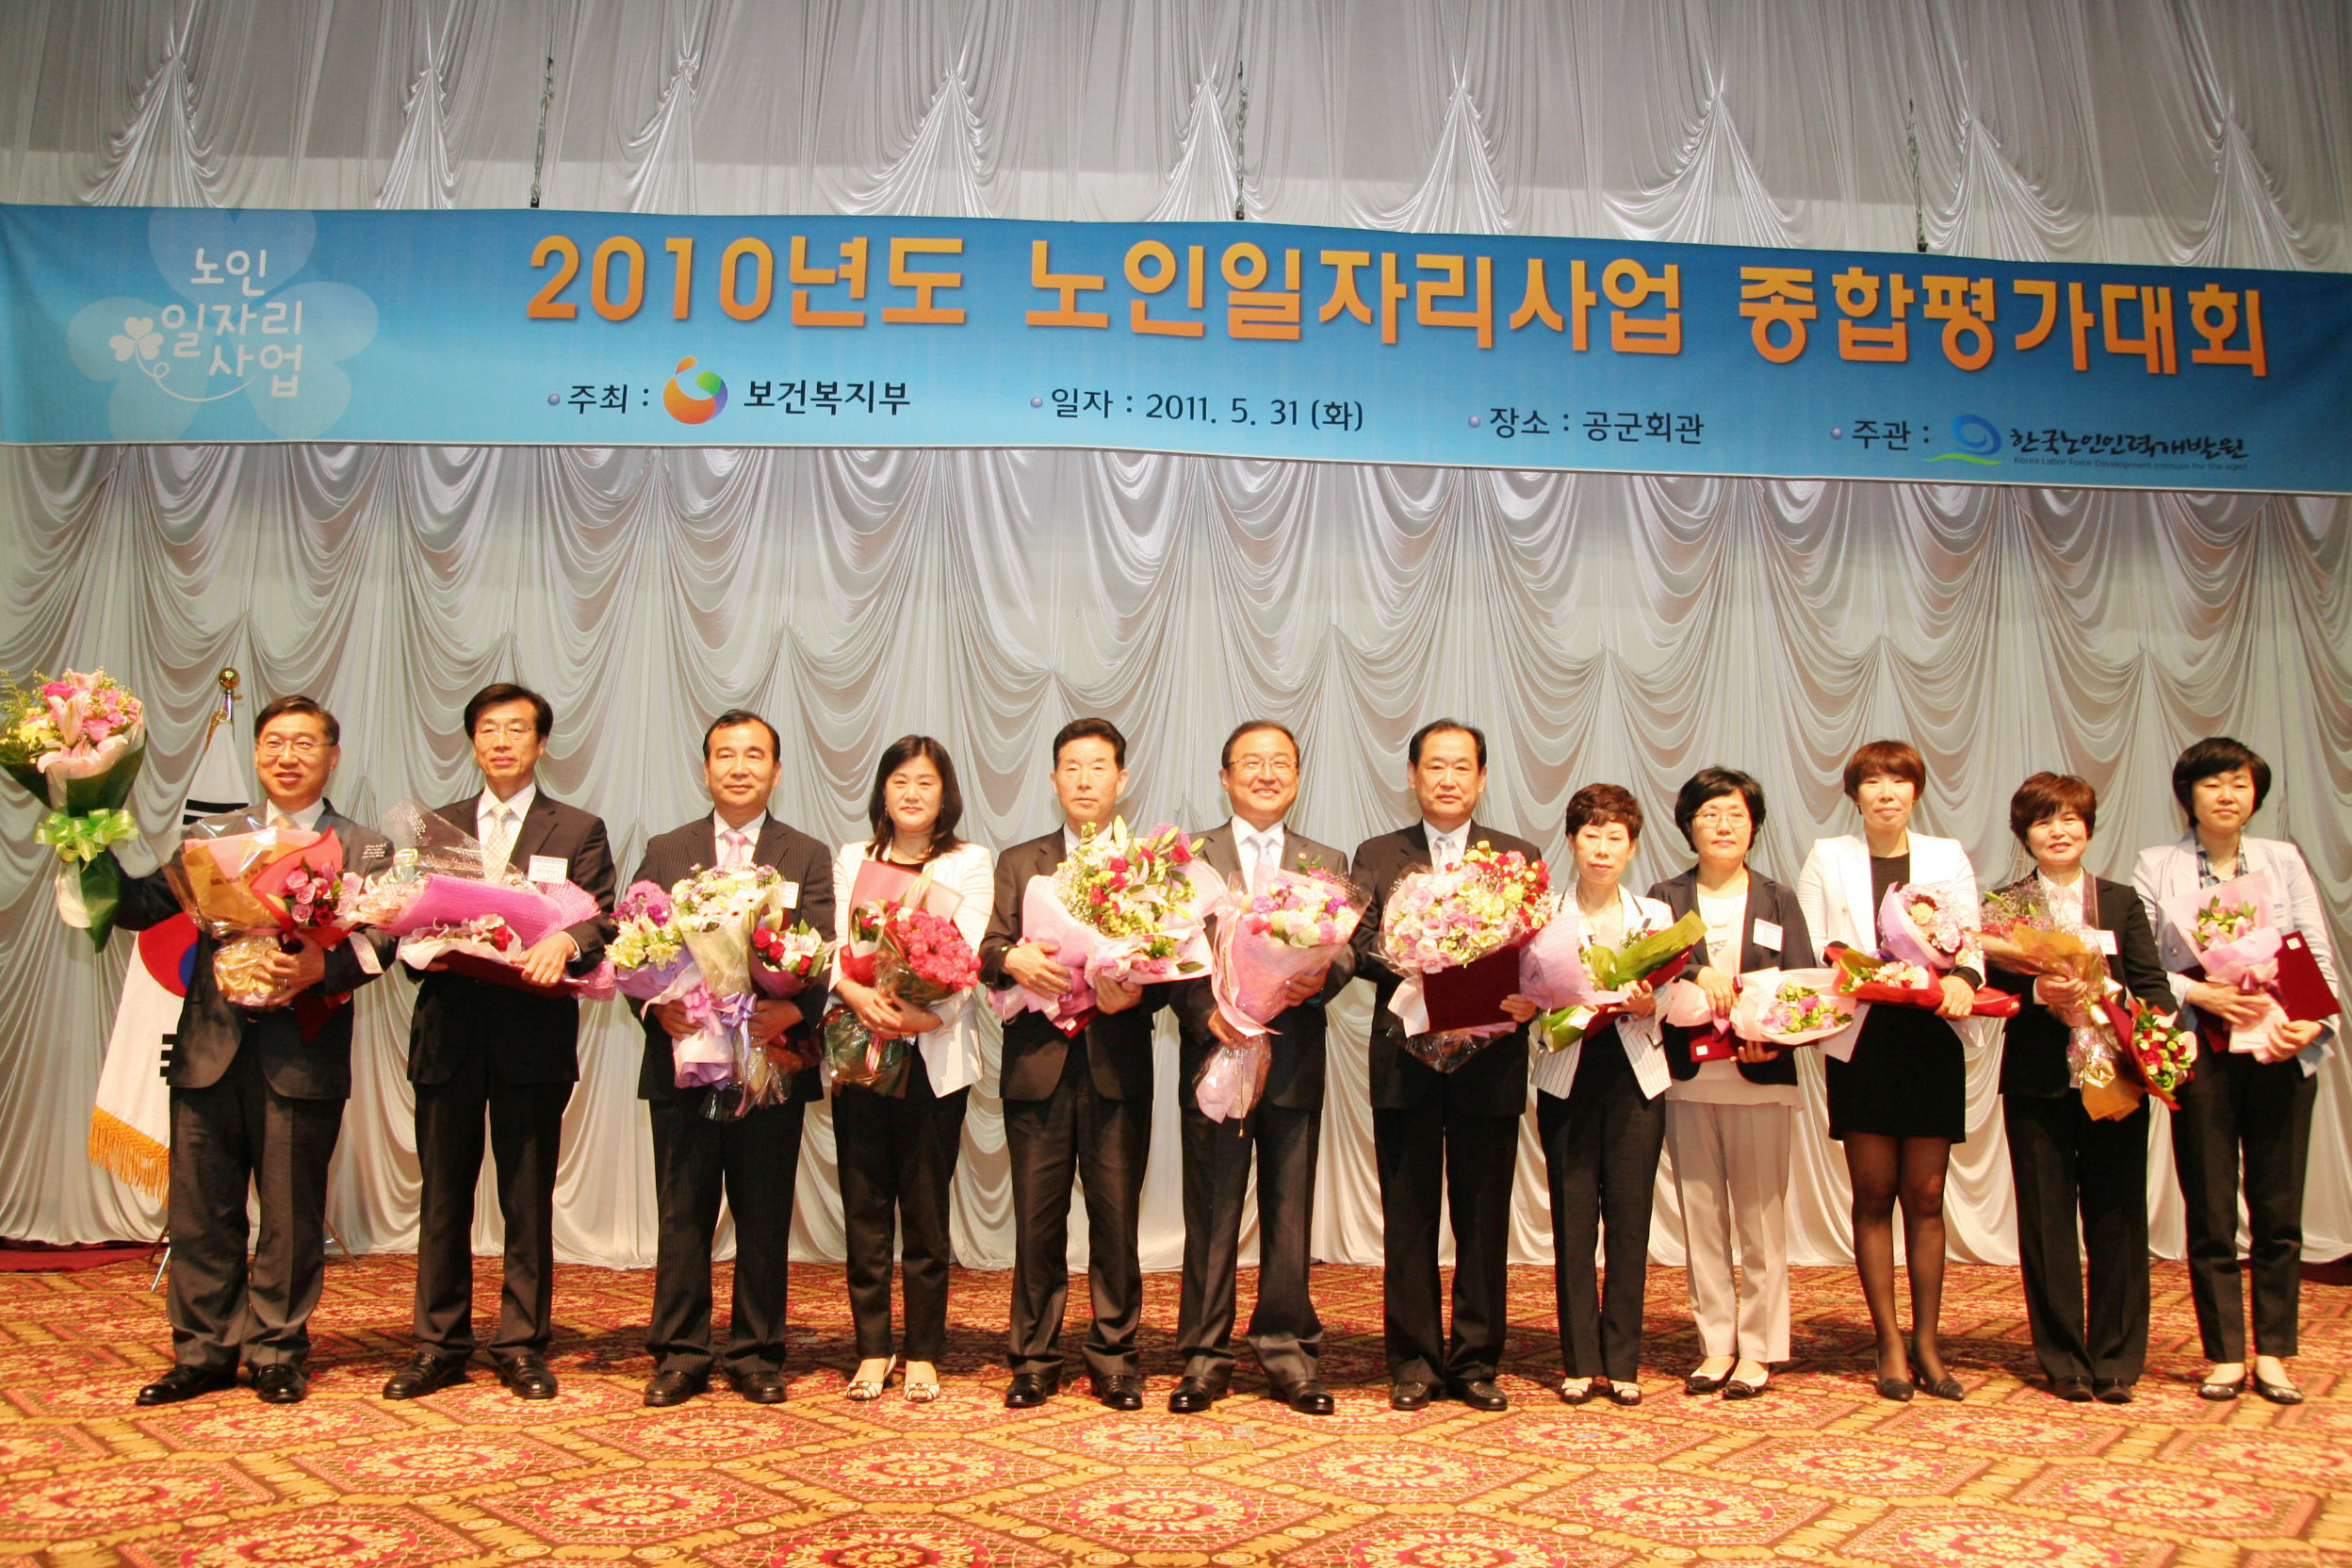 2010년 노인일자리사업 평가대회 개최